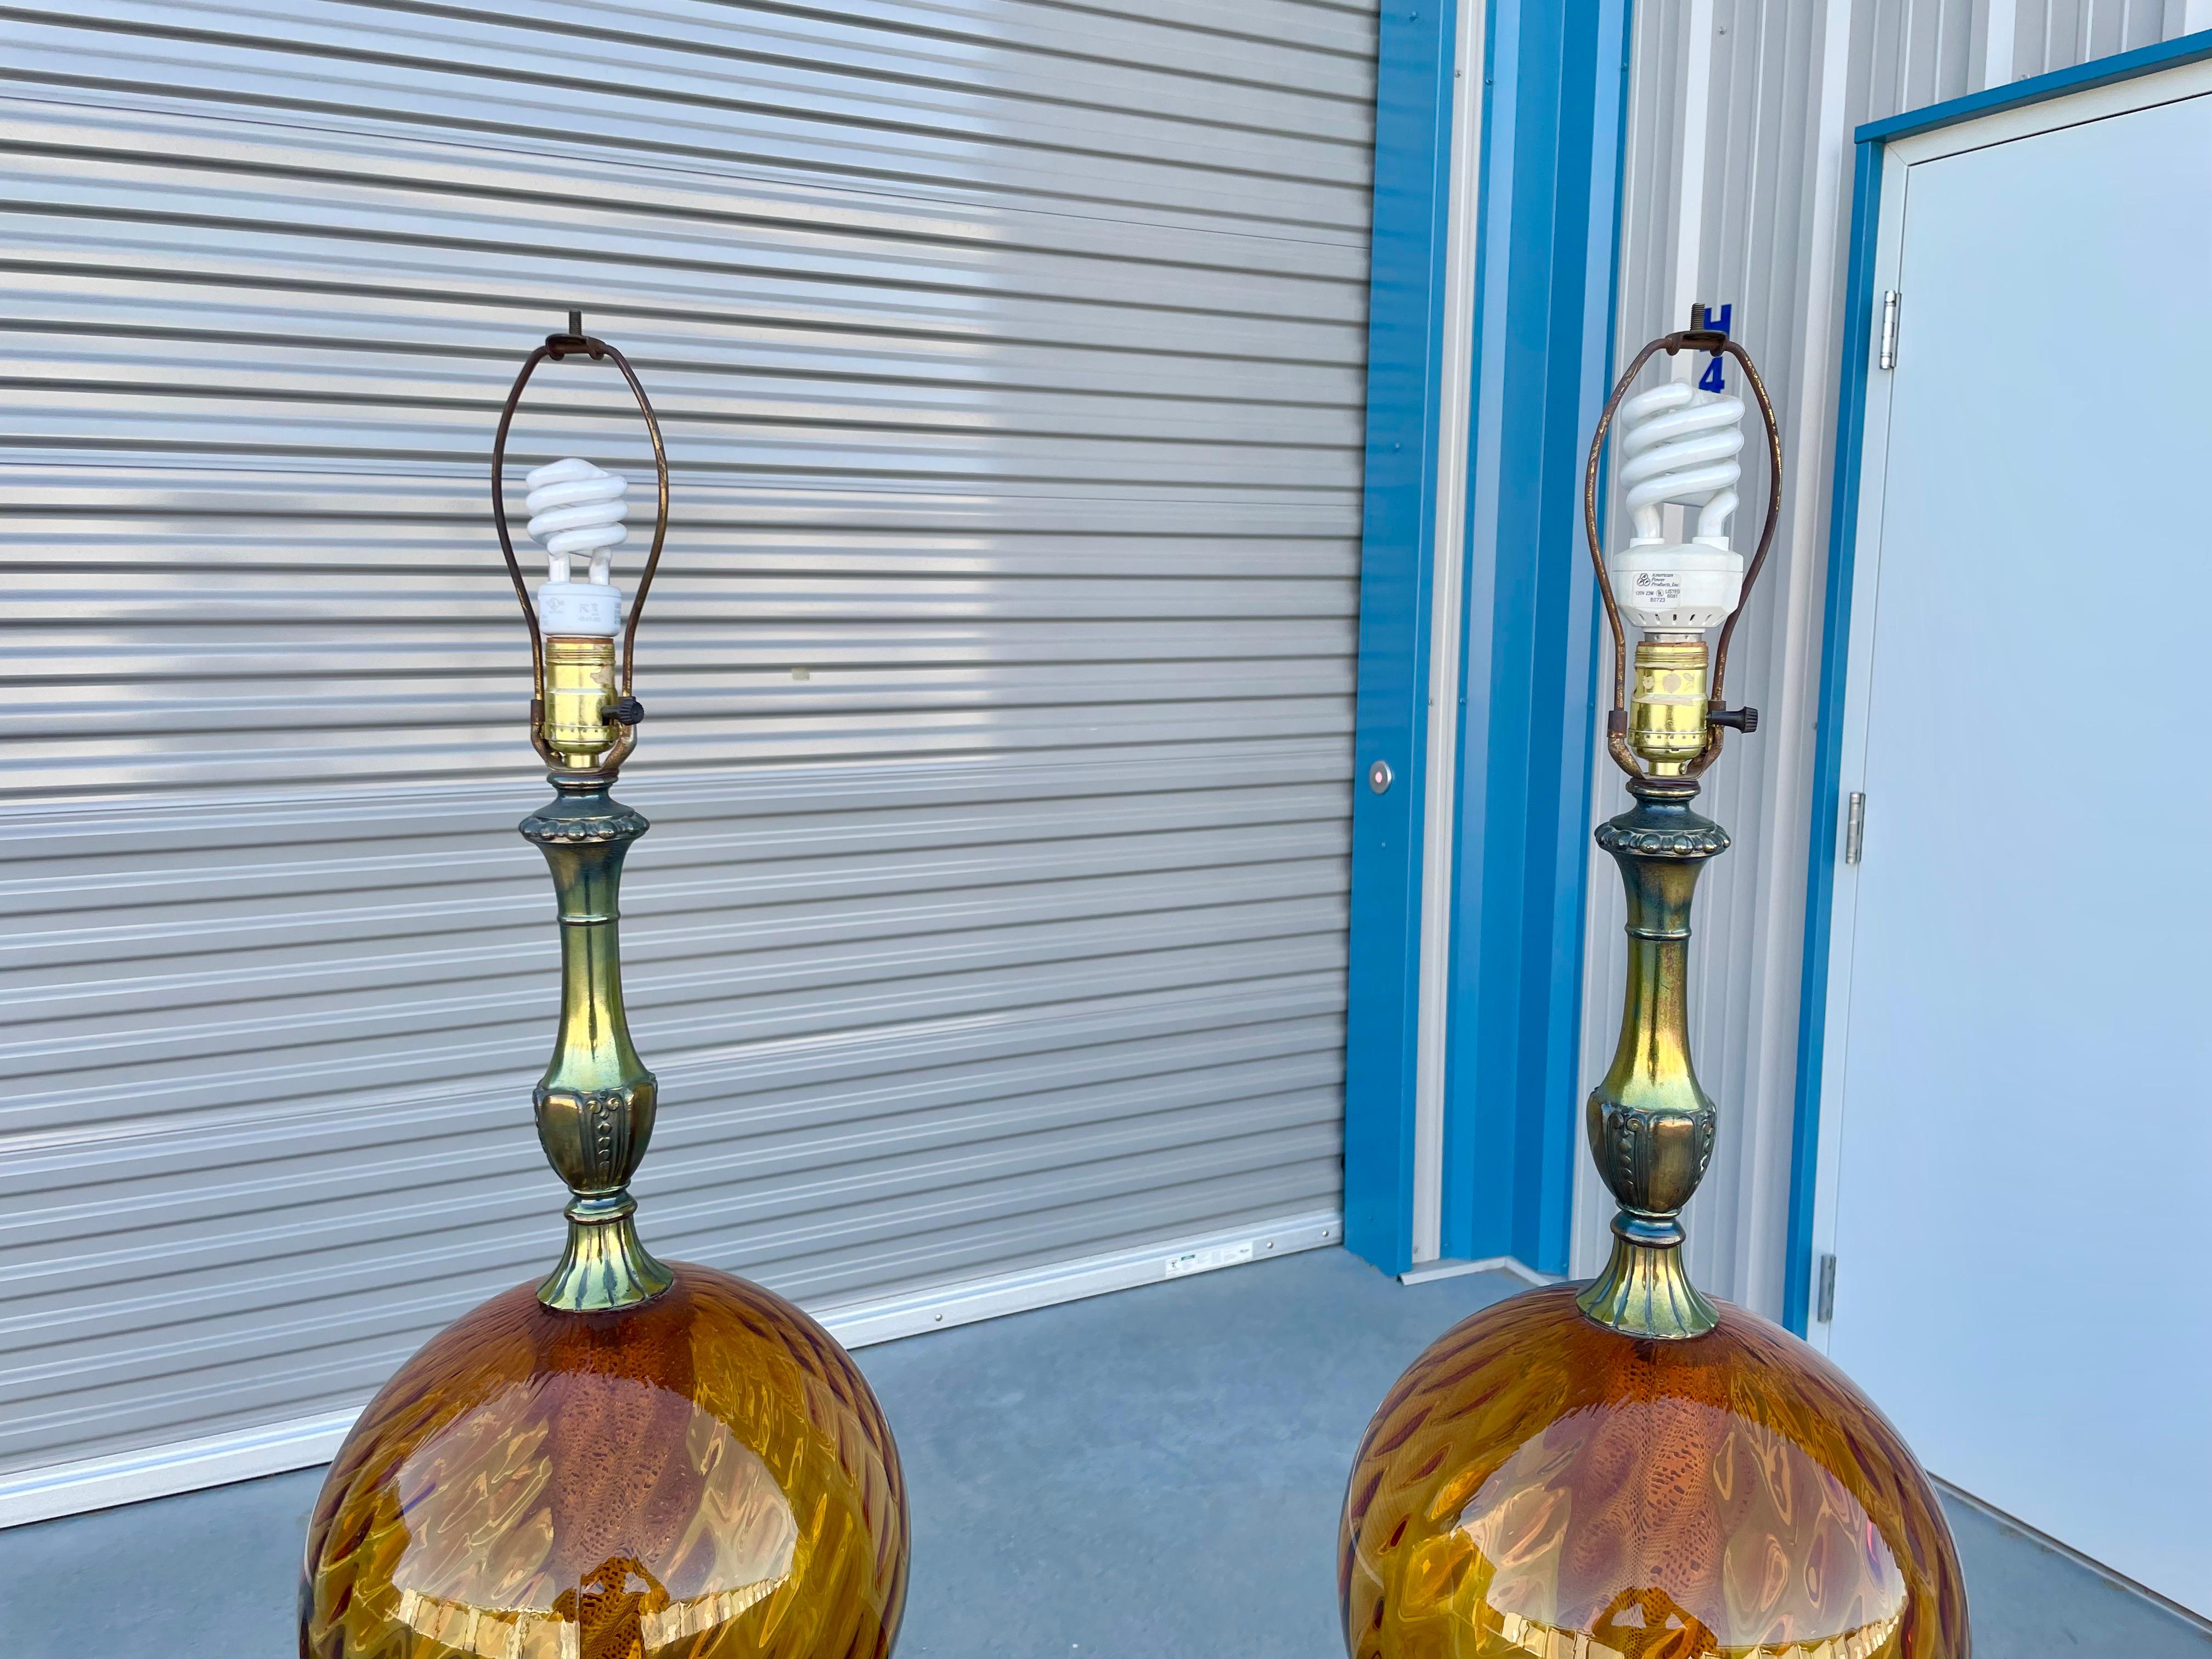 Vintage Paar Glaskugellampen, entworfen und hergestellt in den Vereinigten Staaten, ca. 1970er Jahre. Diese schönen Vintage-Lampen haben ein kugelförmiges Glasdesign auf einem Metallsockel, das ihnen einen eleganten Vintage-Stil verleiht. Die